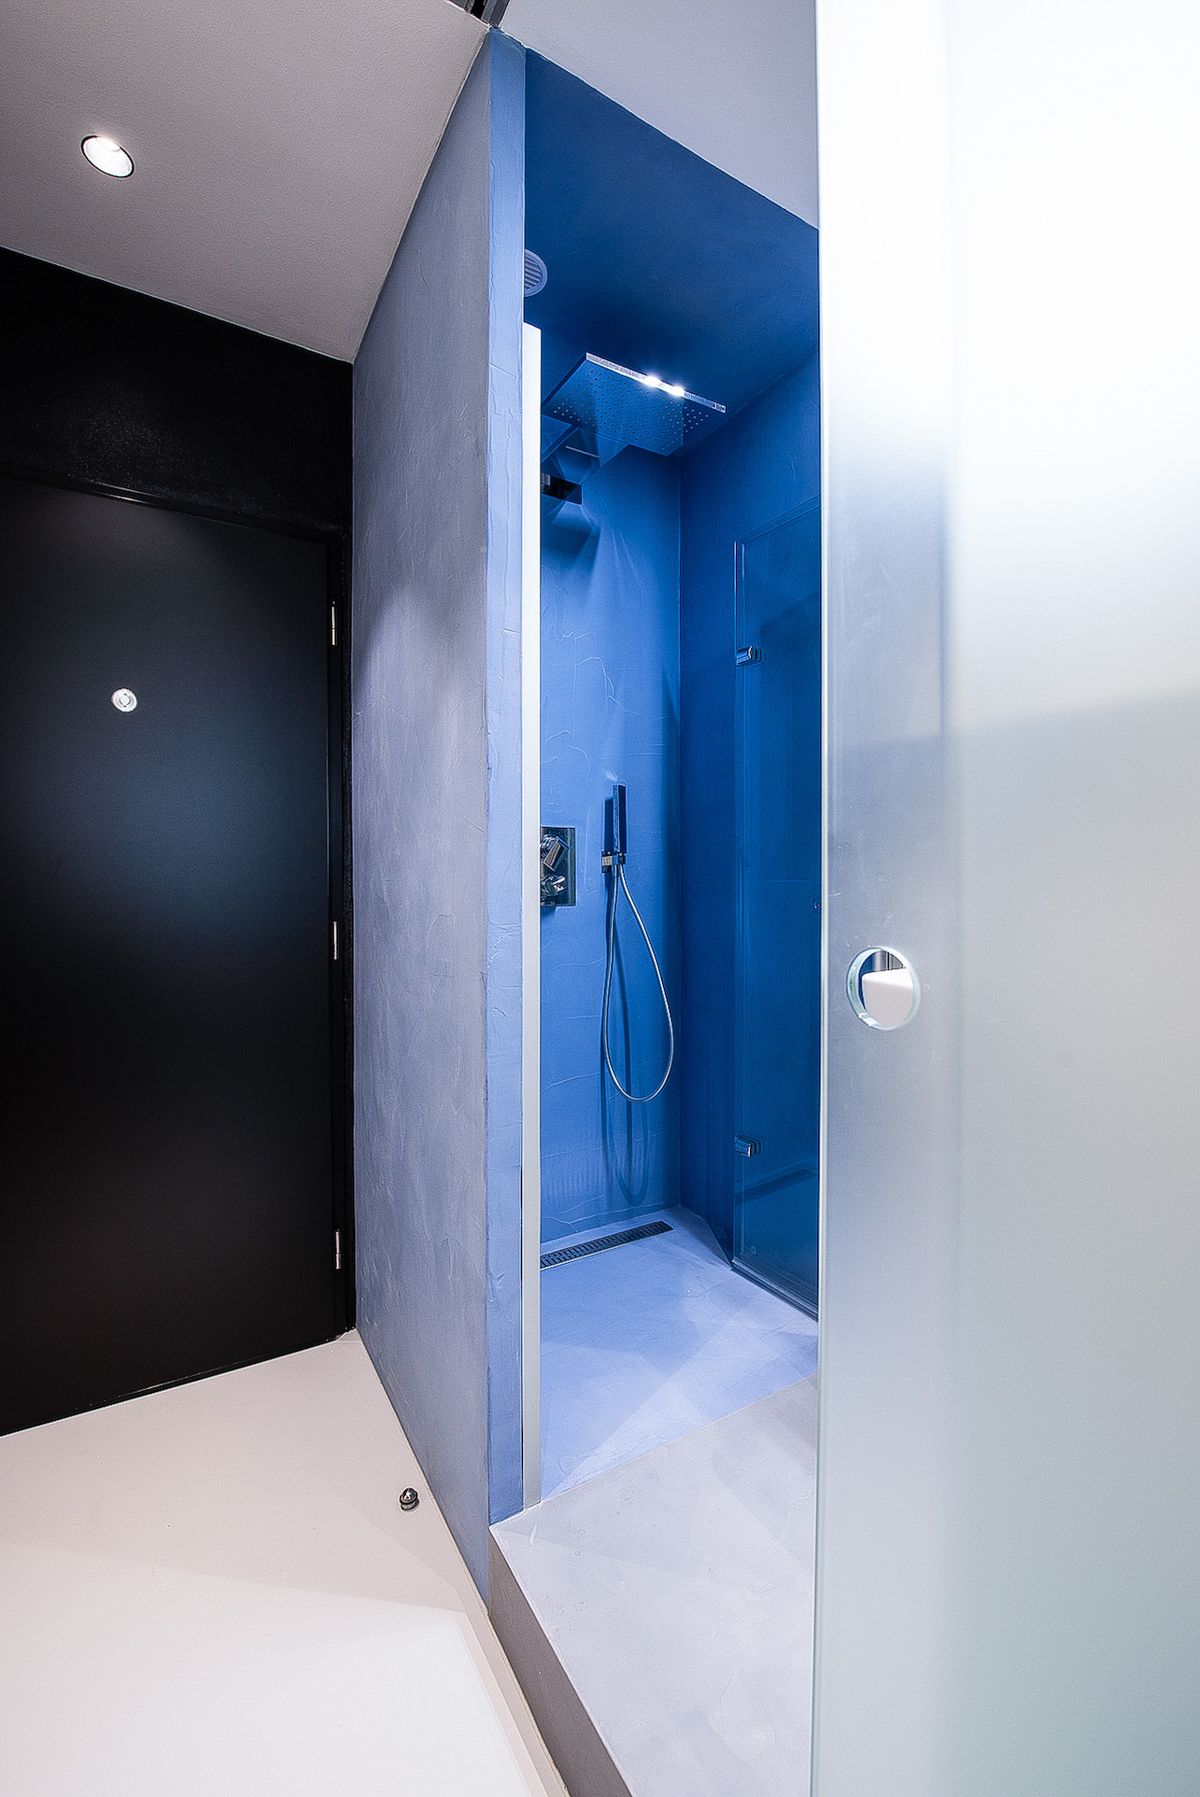 Modrá stěrka pokračuje do koupelny, respektive do sprchového koutu, kde ji najdeme na stěnách, podlaze i stropu.